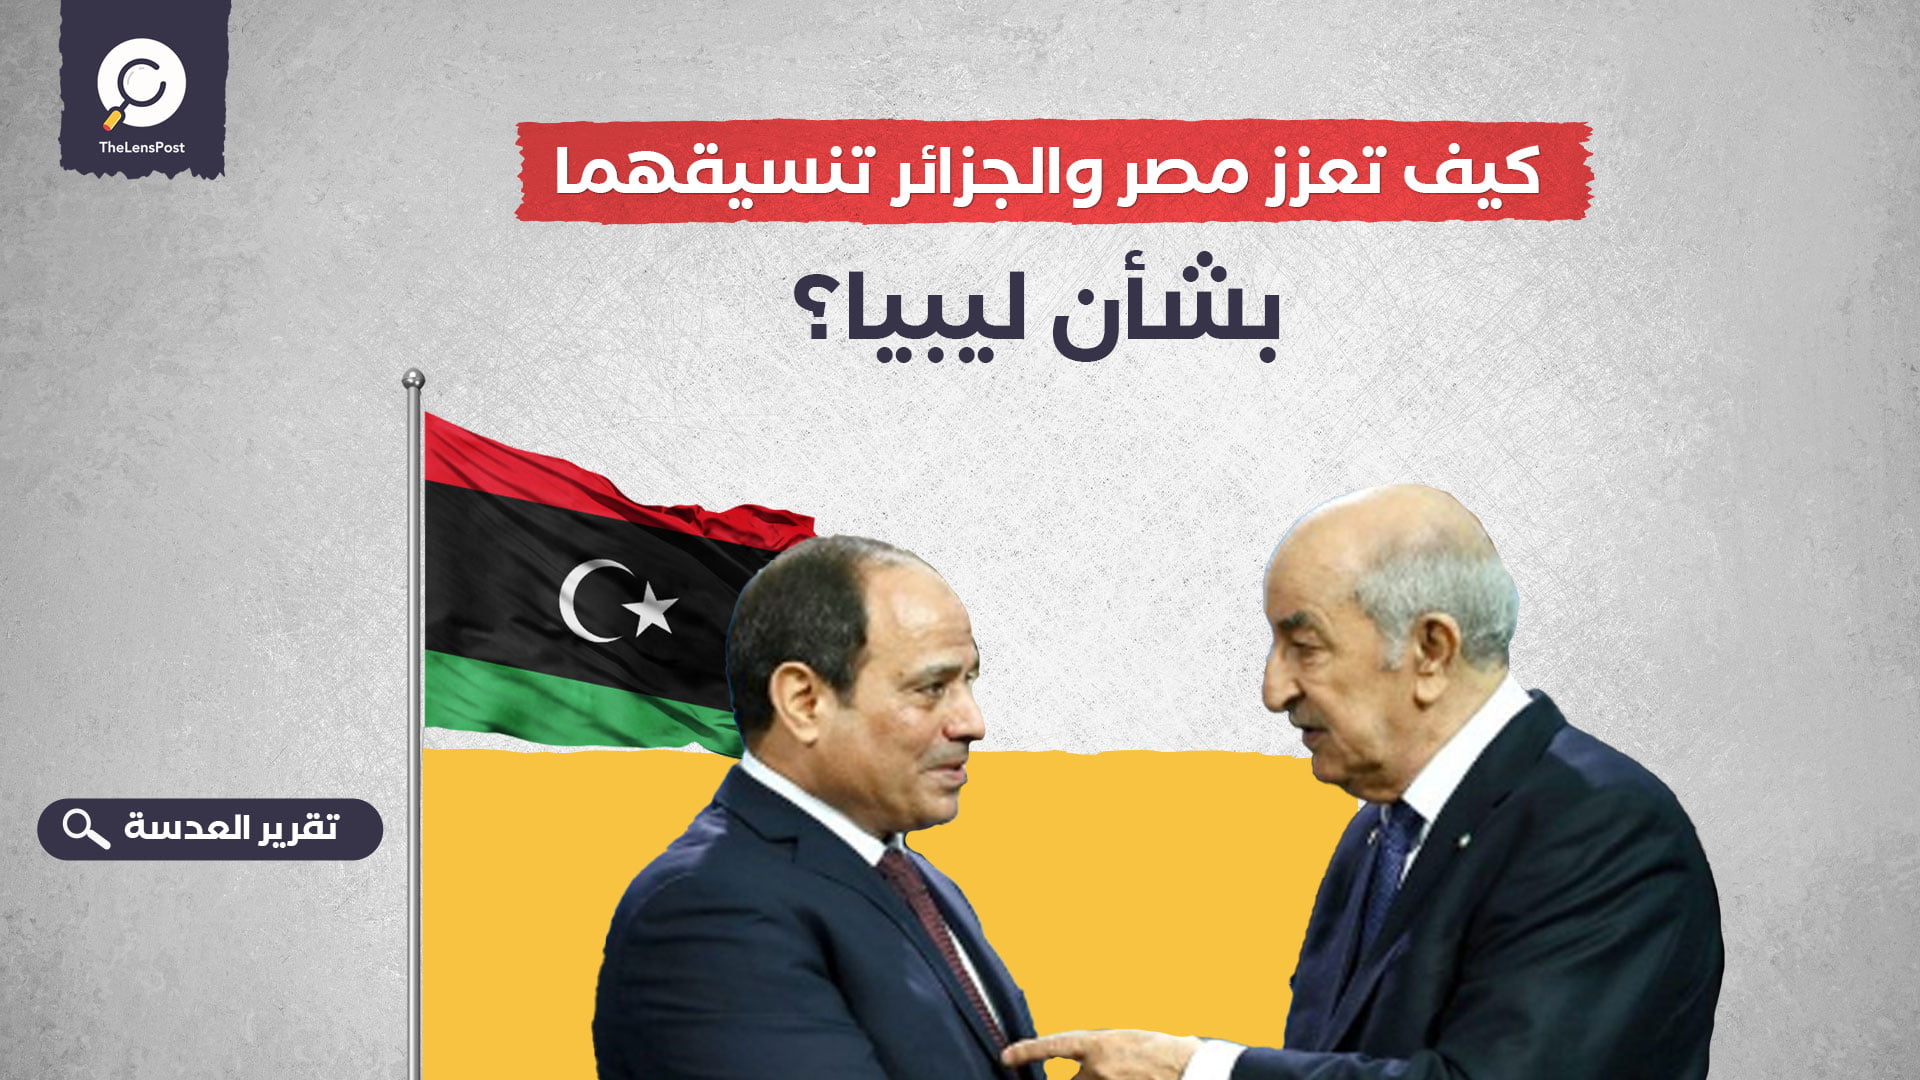 كيف تعزز مصر والجزائر تنسيقهما بشأن ليبيا؟